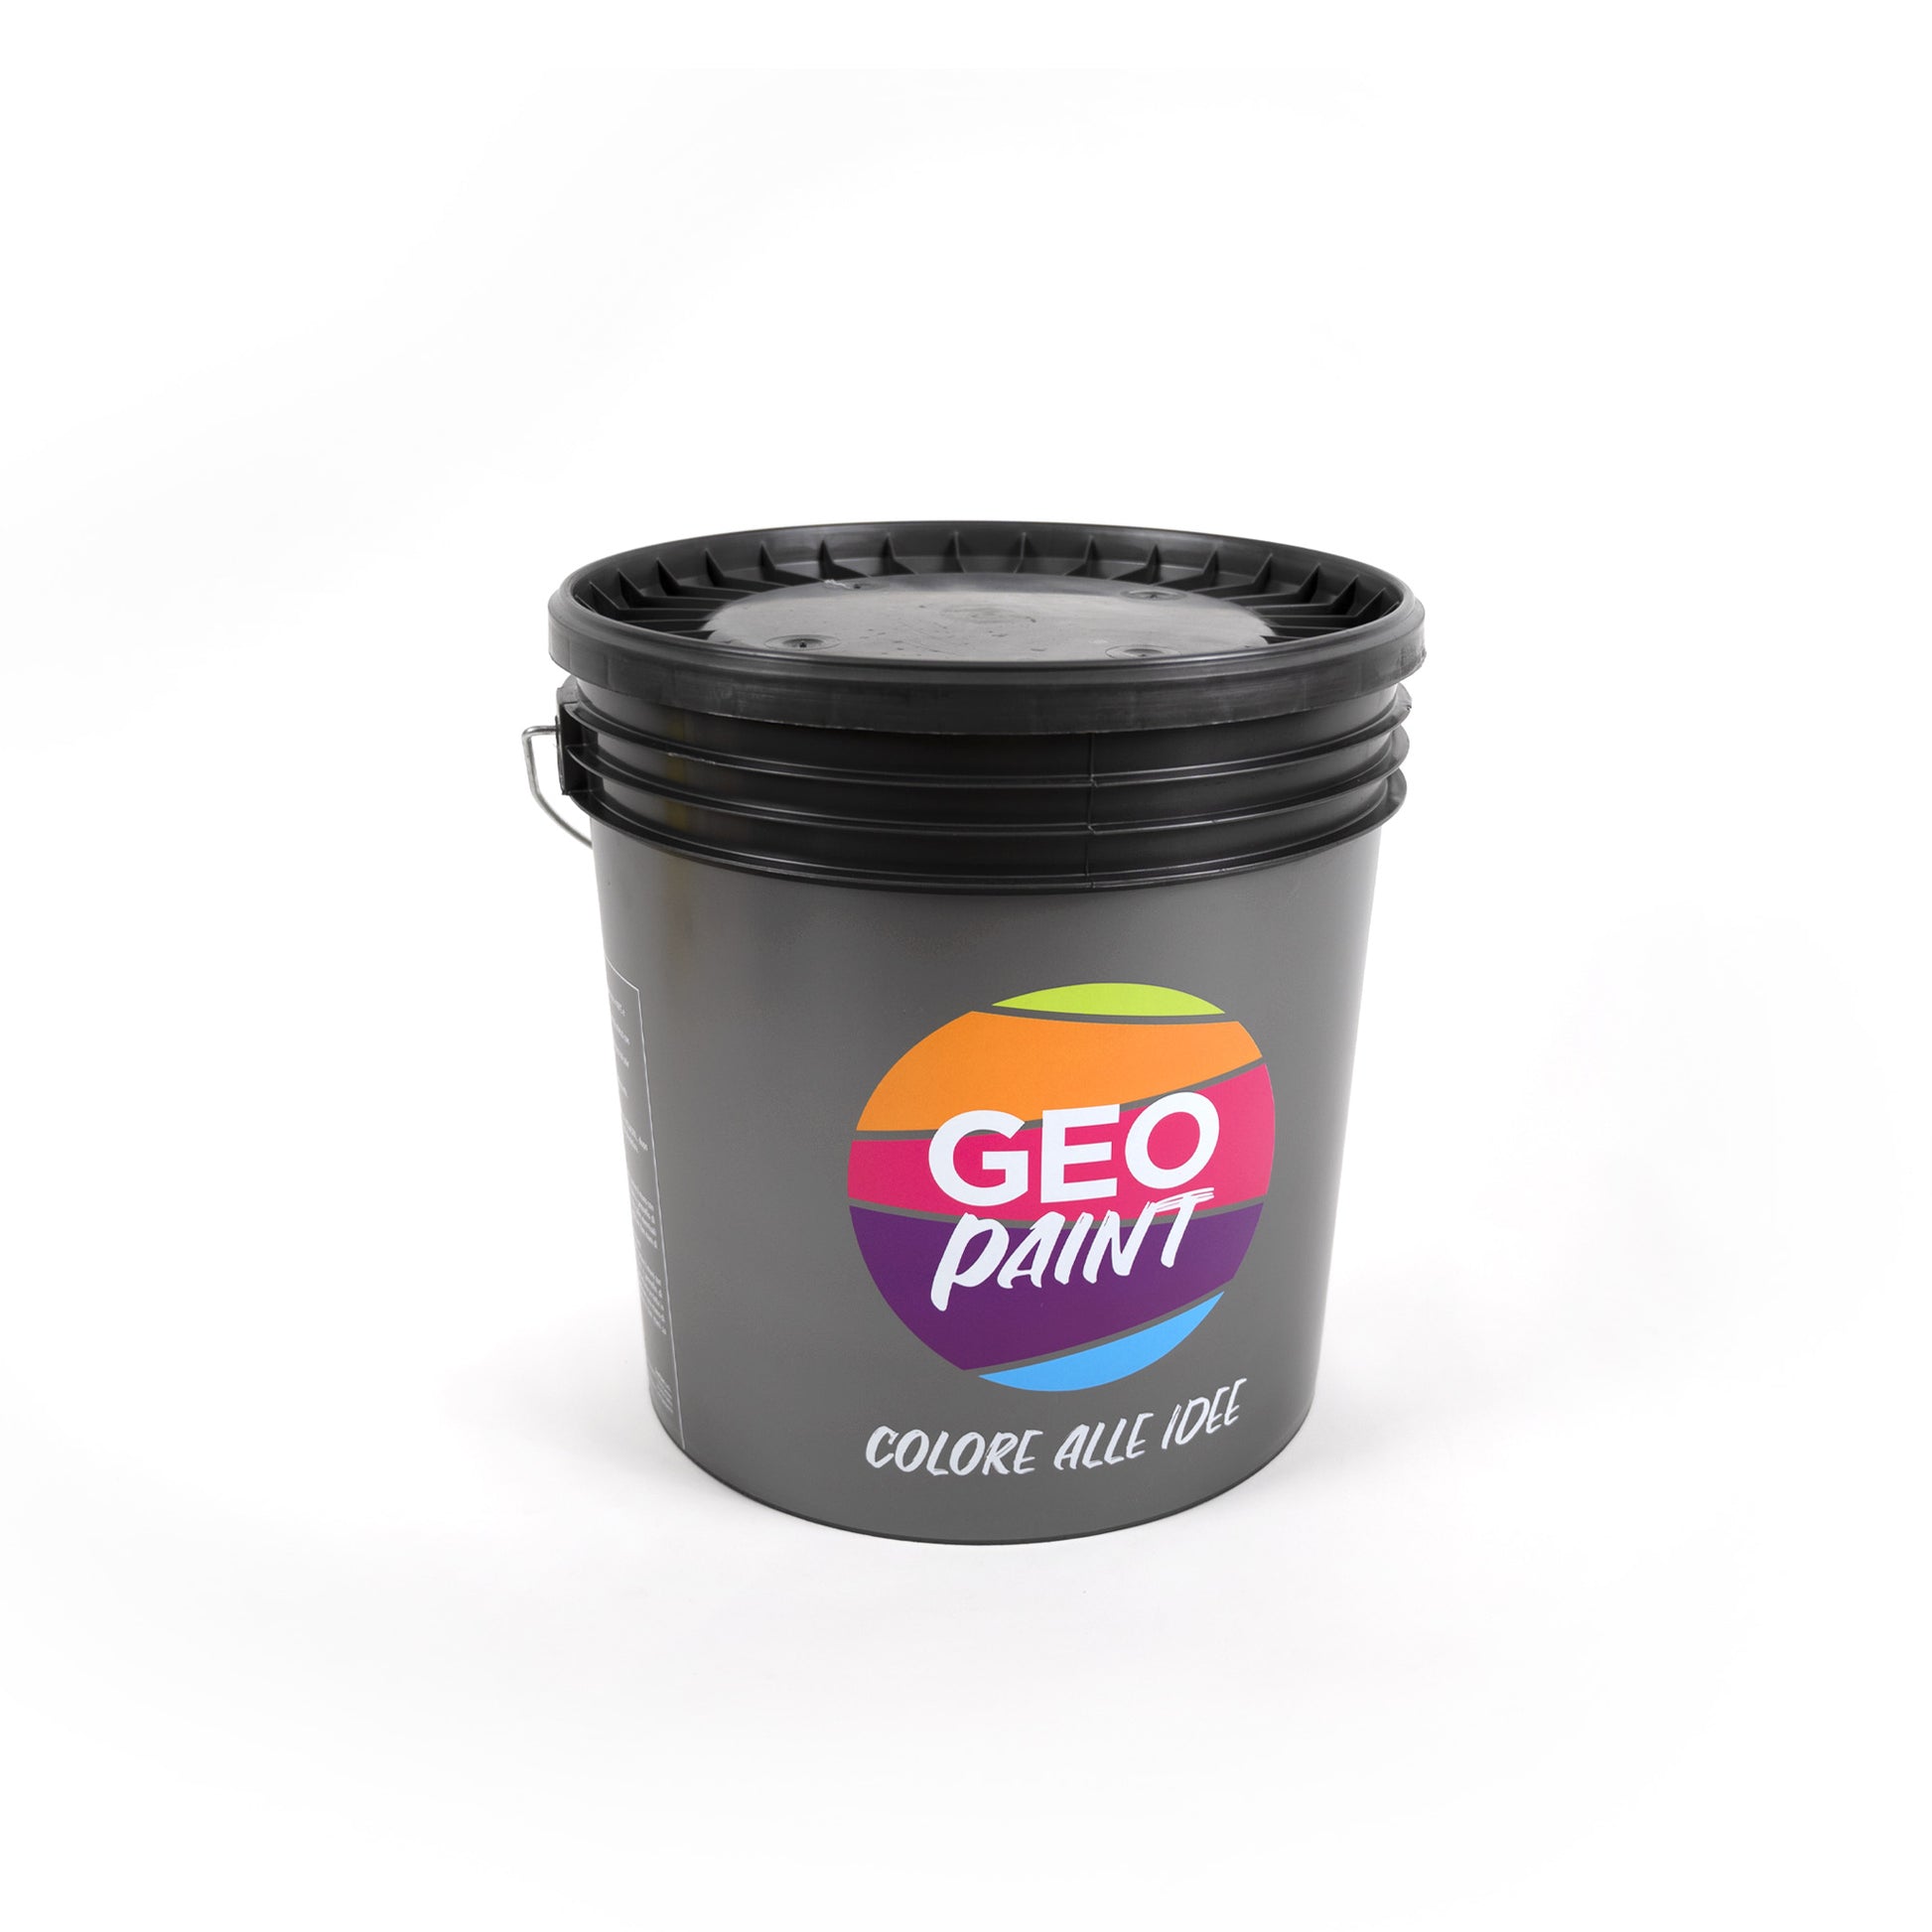 Rextop-grana-fine-retro-Resina-monocomponente-per-pavimenti-geopaint-colorifici-genova